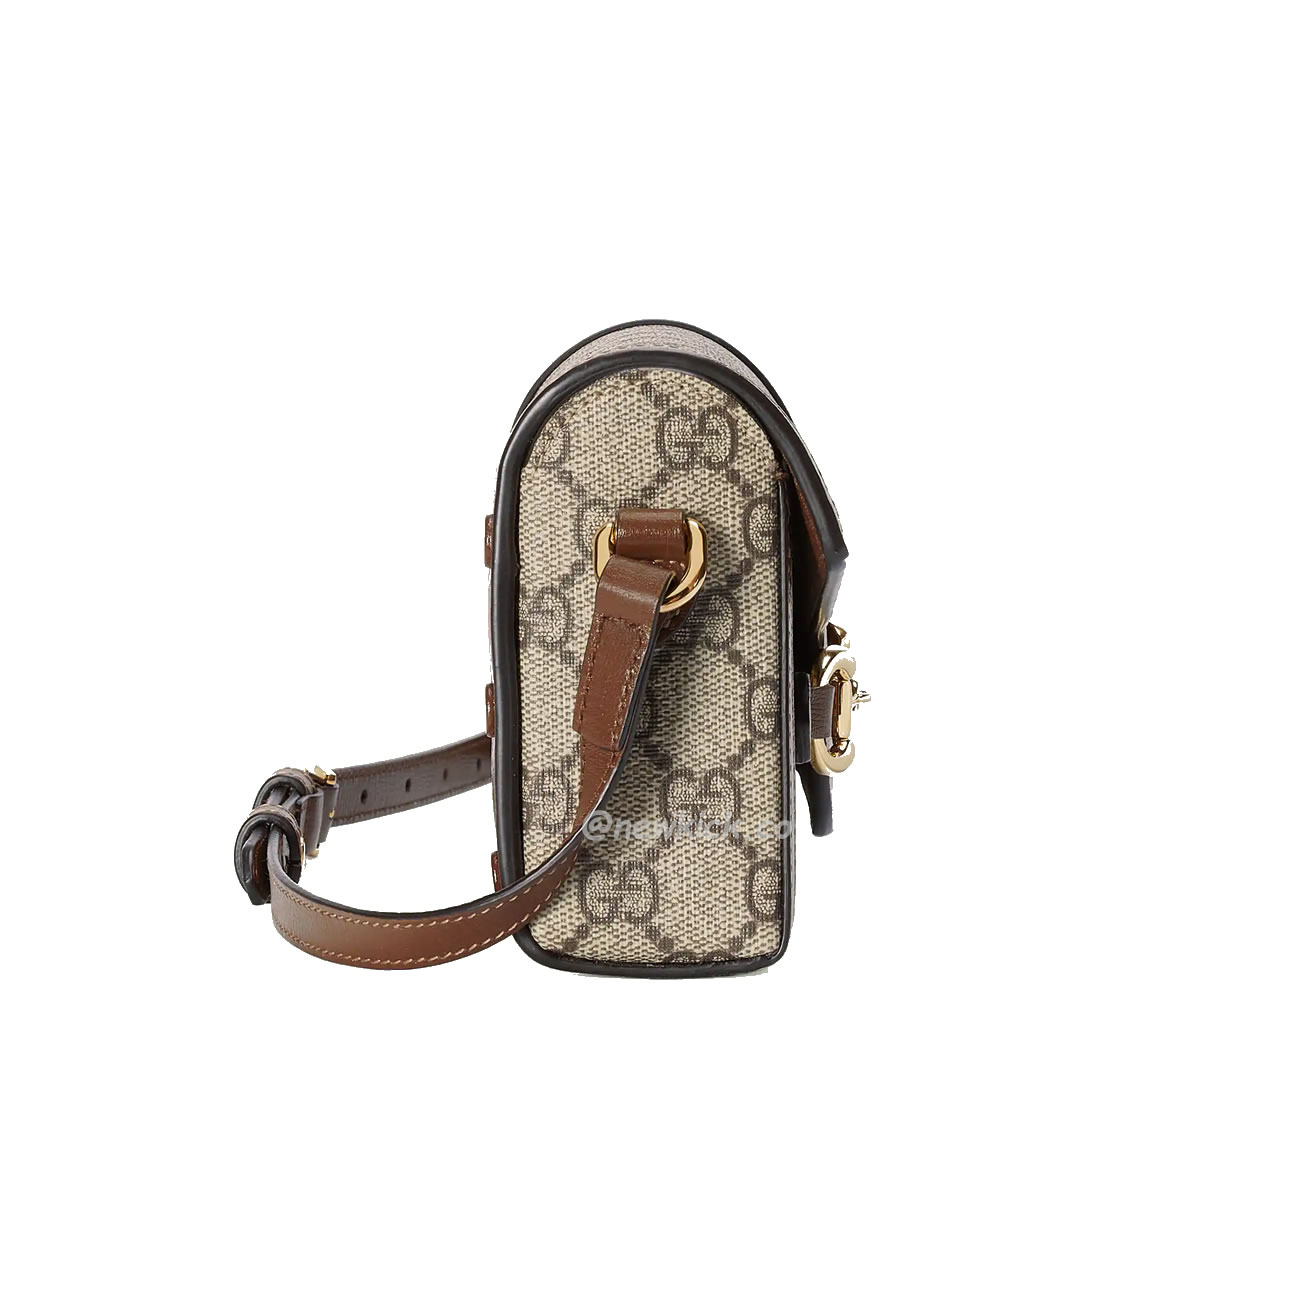 GUCCI Horsebit 1955 Mini handbag 699296 92TCG 8563